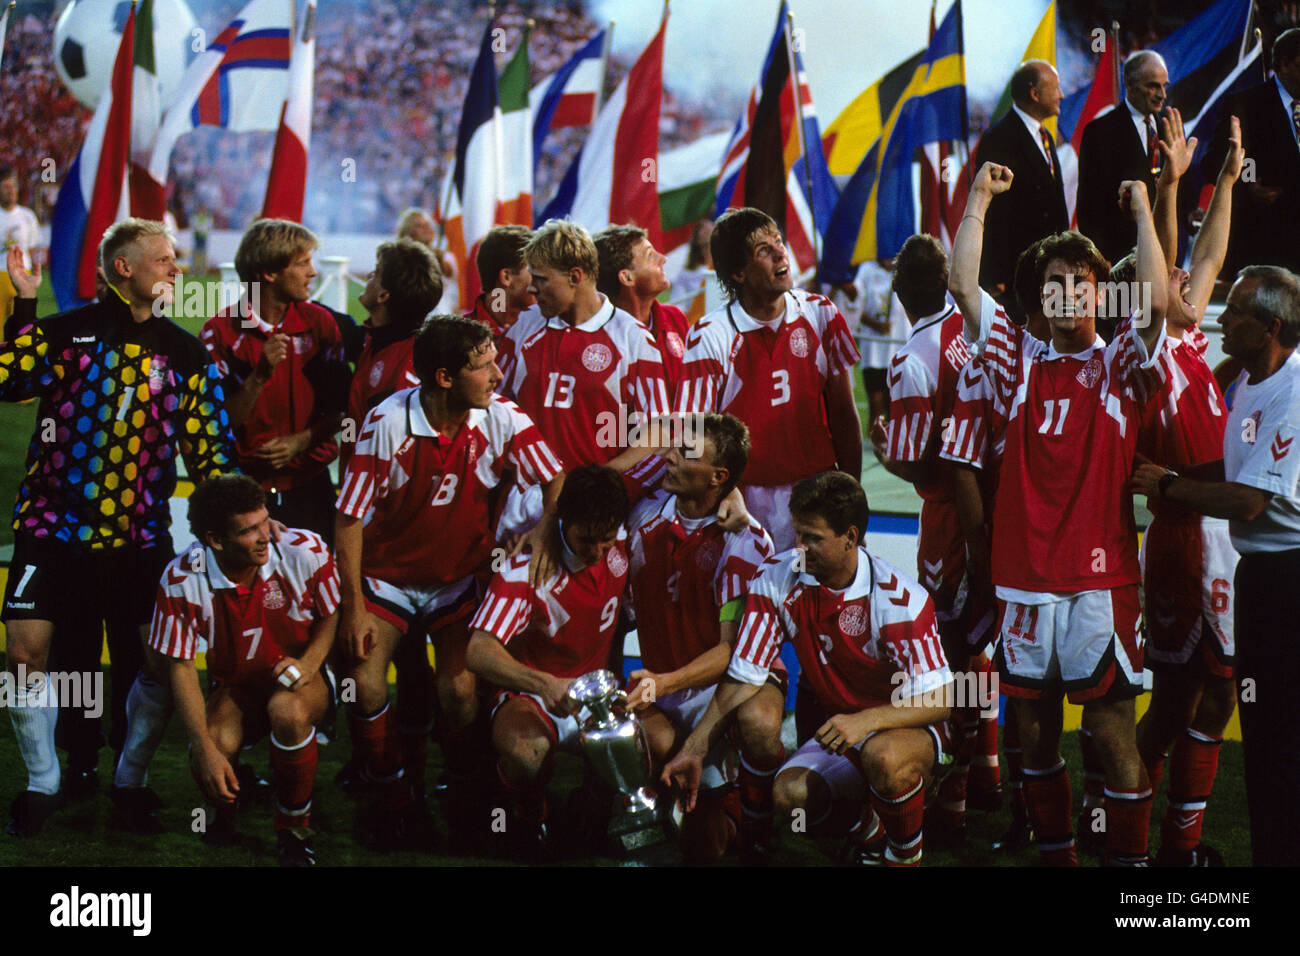 Soccer - European Championships - Final - Germany v Denmark - Ullevi, Gothenburg. The Denmark team celebrate victory over Germany in the 1992 European Championship Final Stock Photo